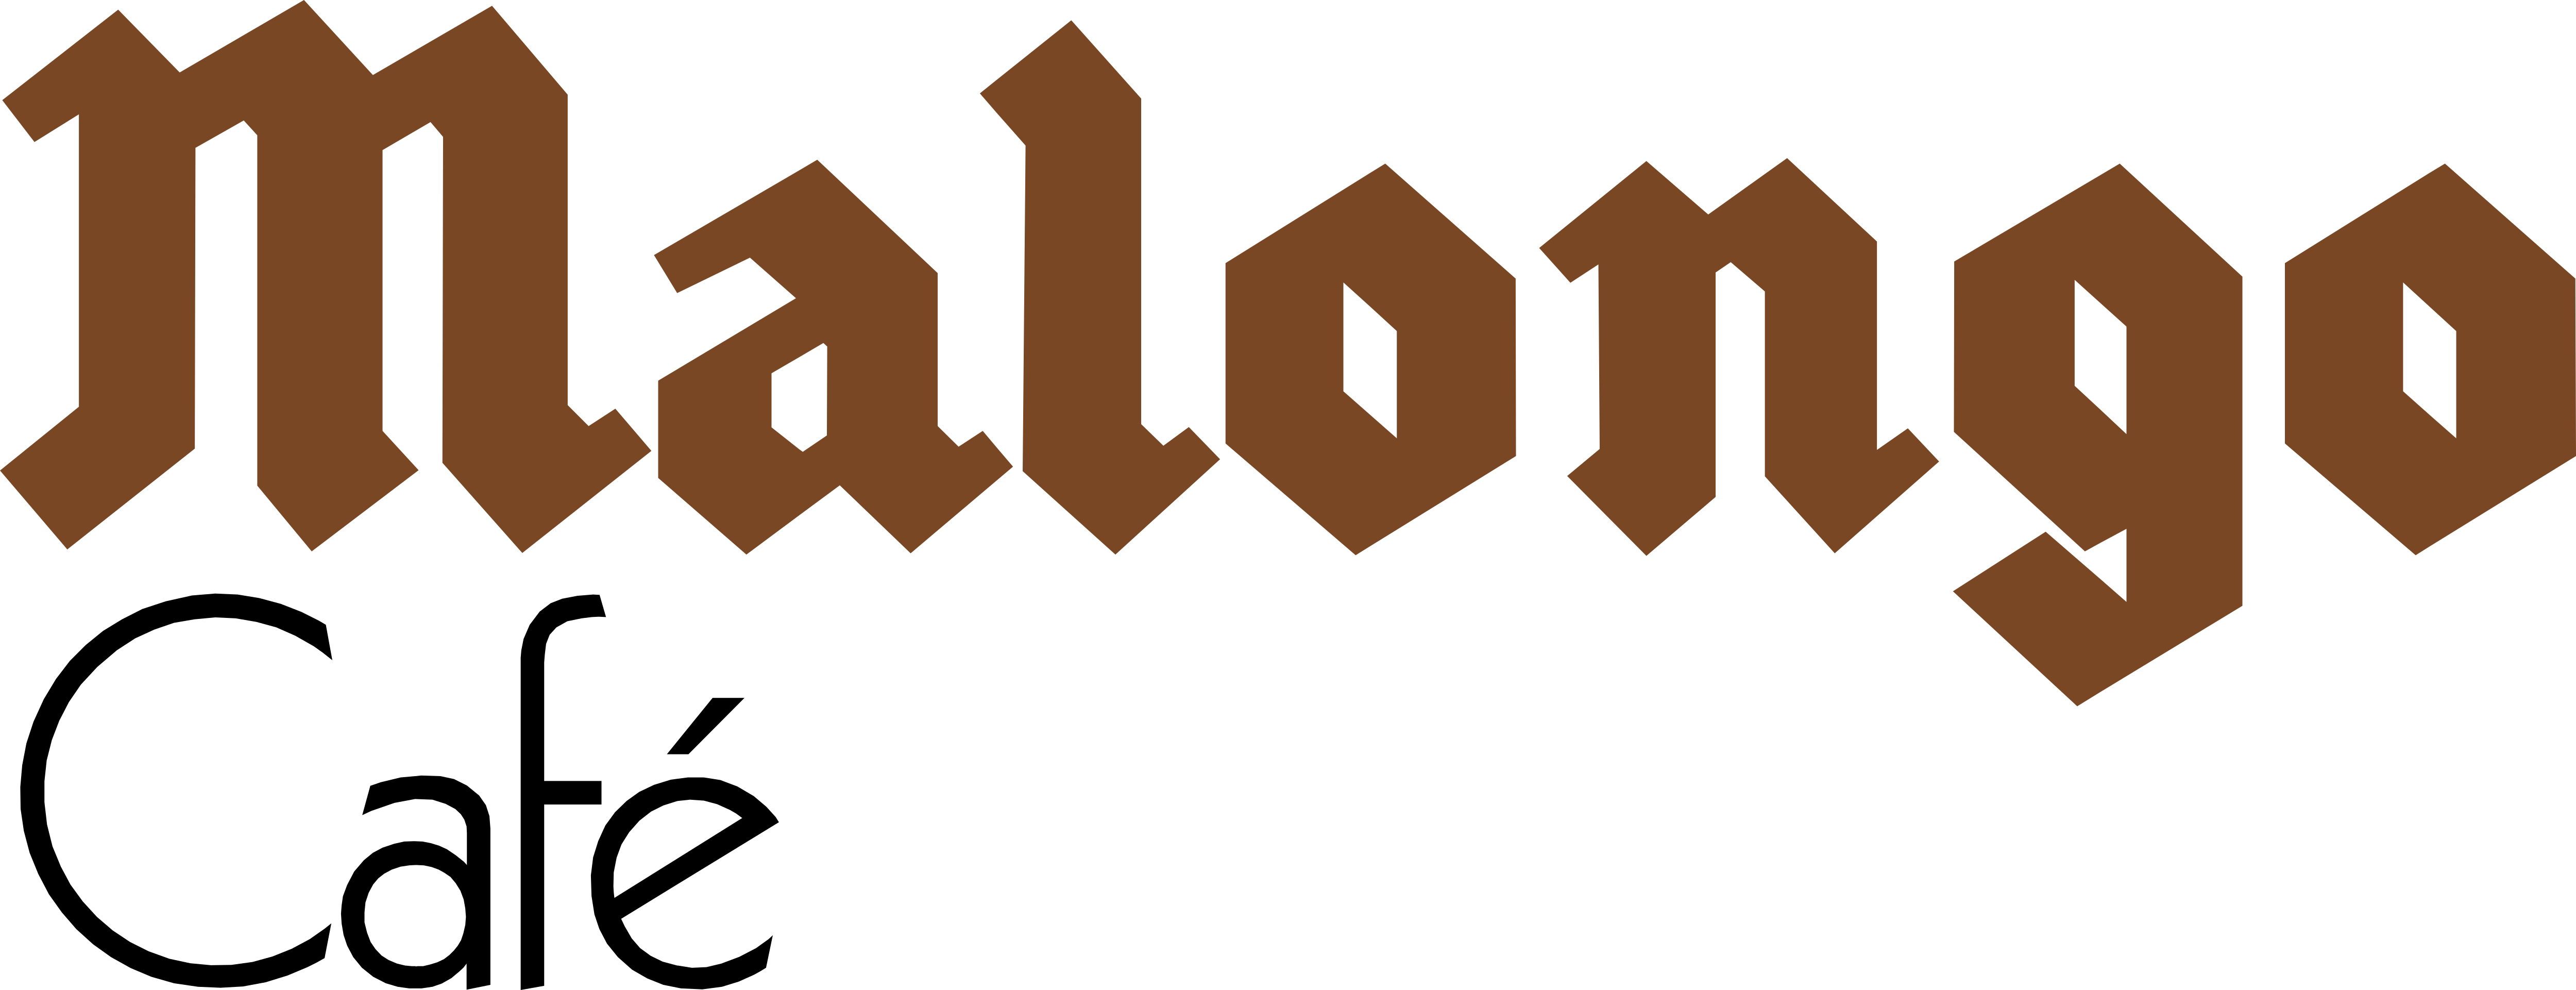 Malongo – Logos Download